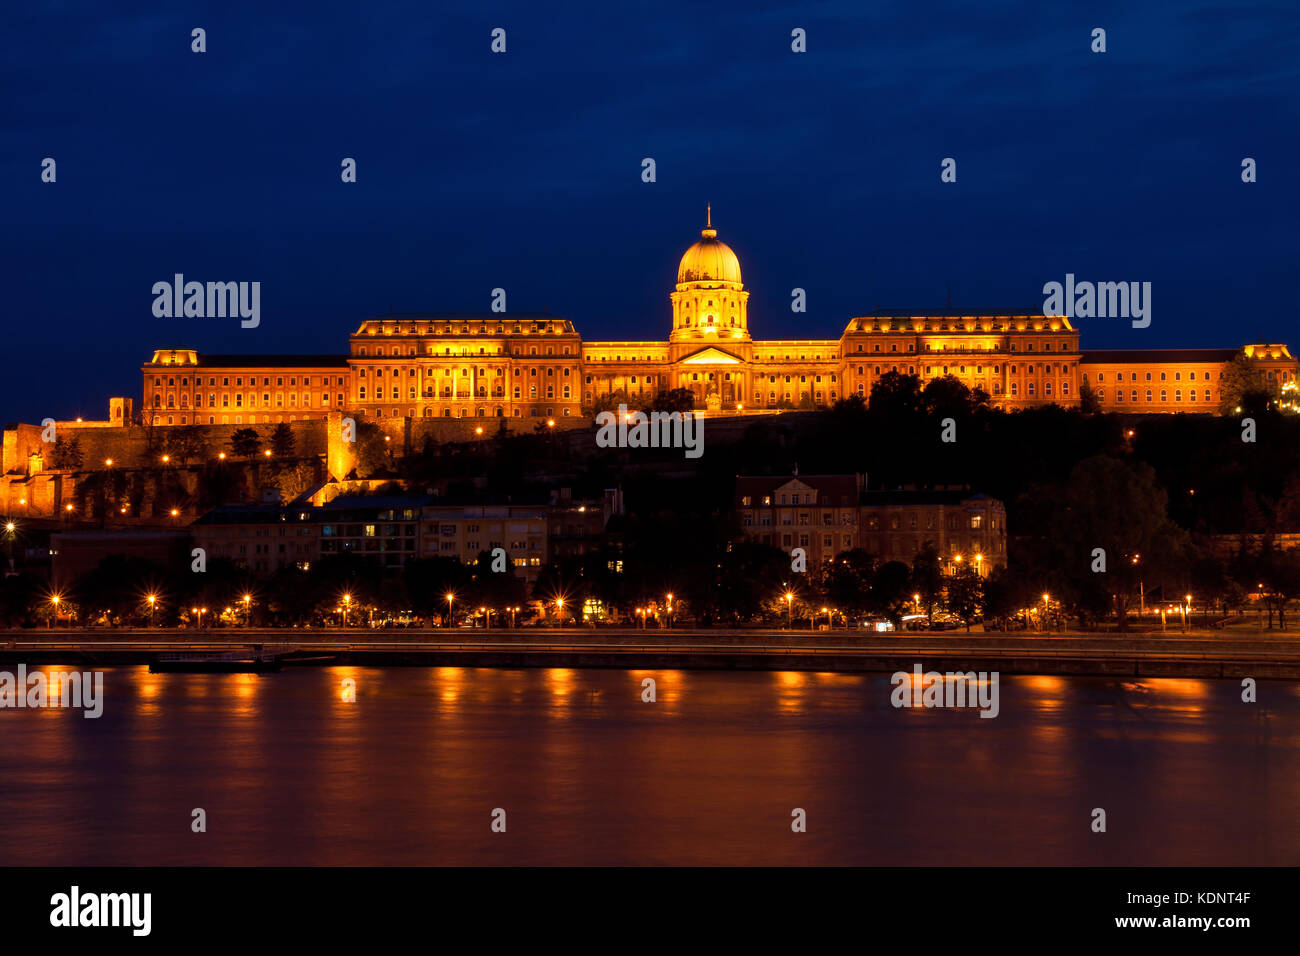 Budapest, Buda castle with night illumination Stock Photo